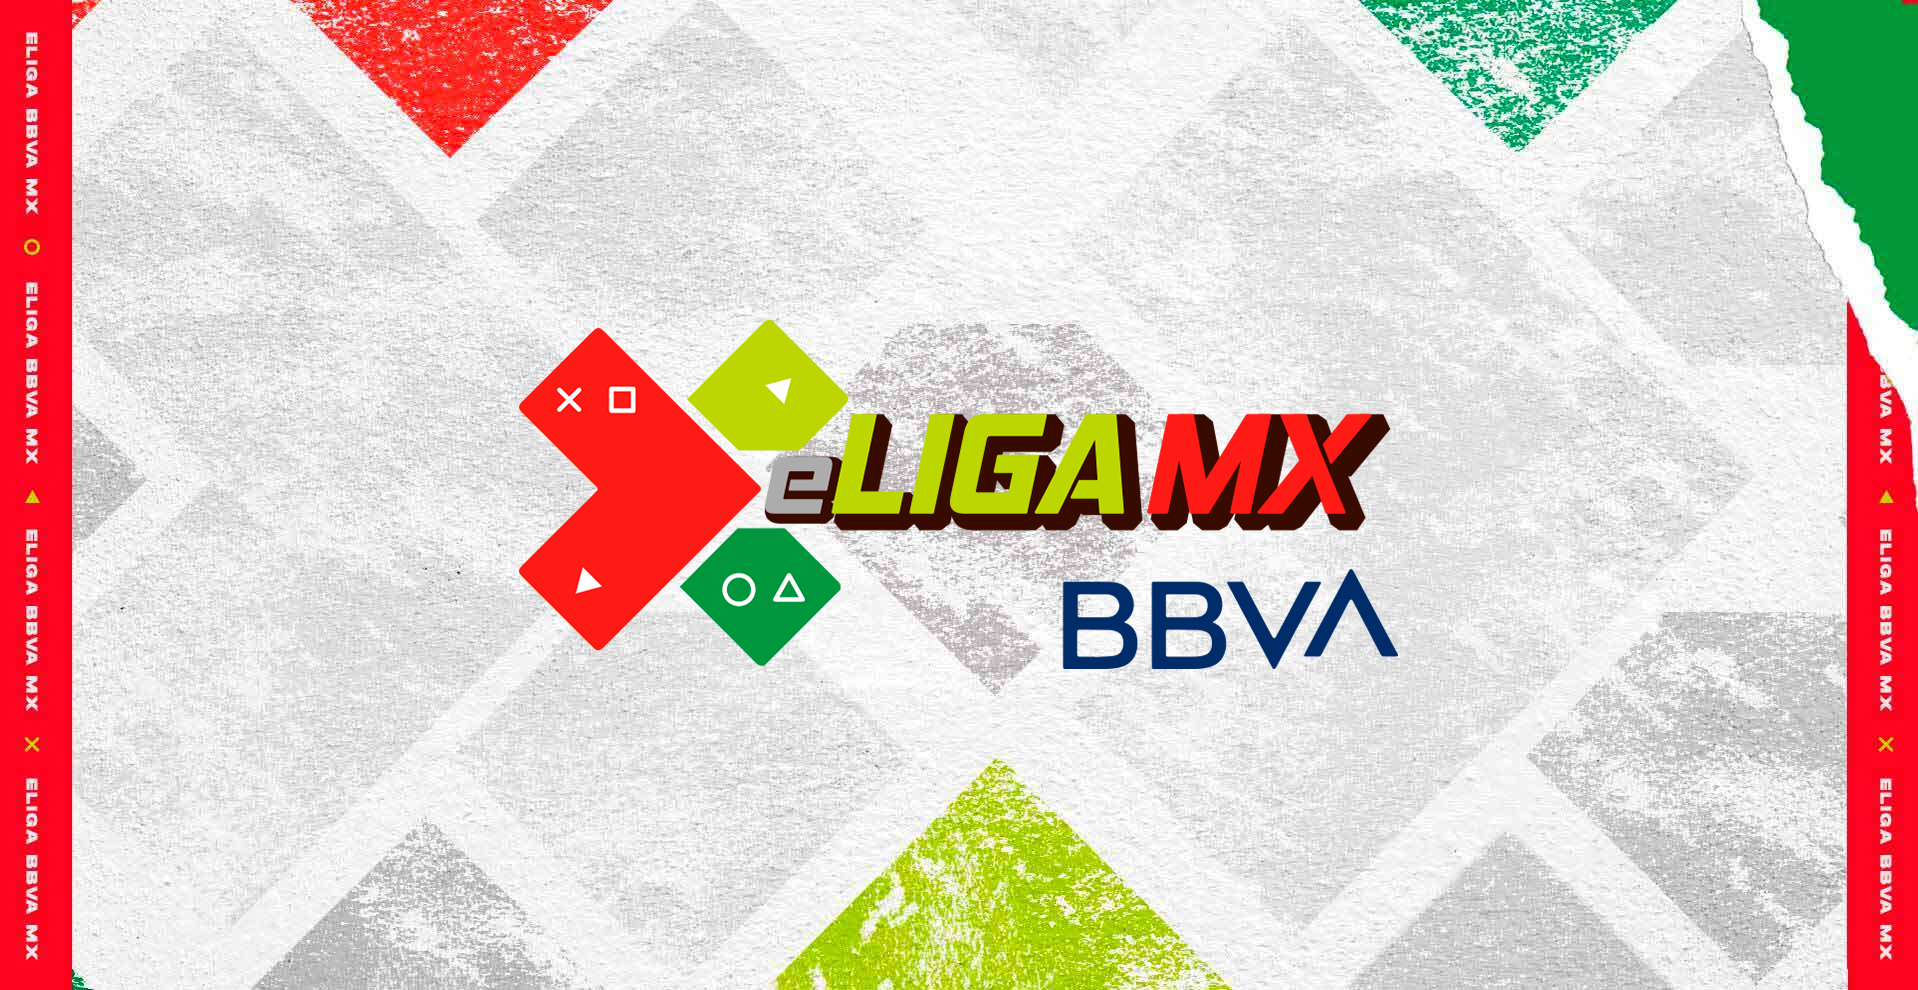 FIFA21 eLigaMx